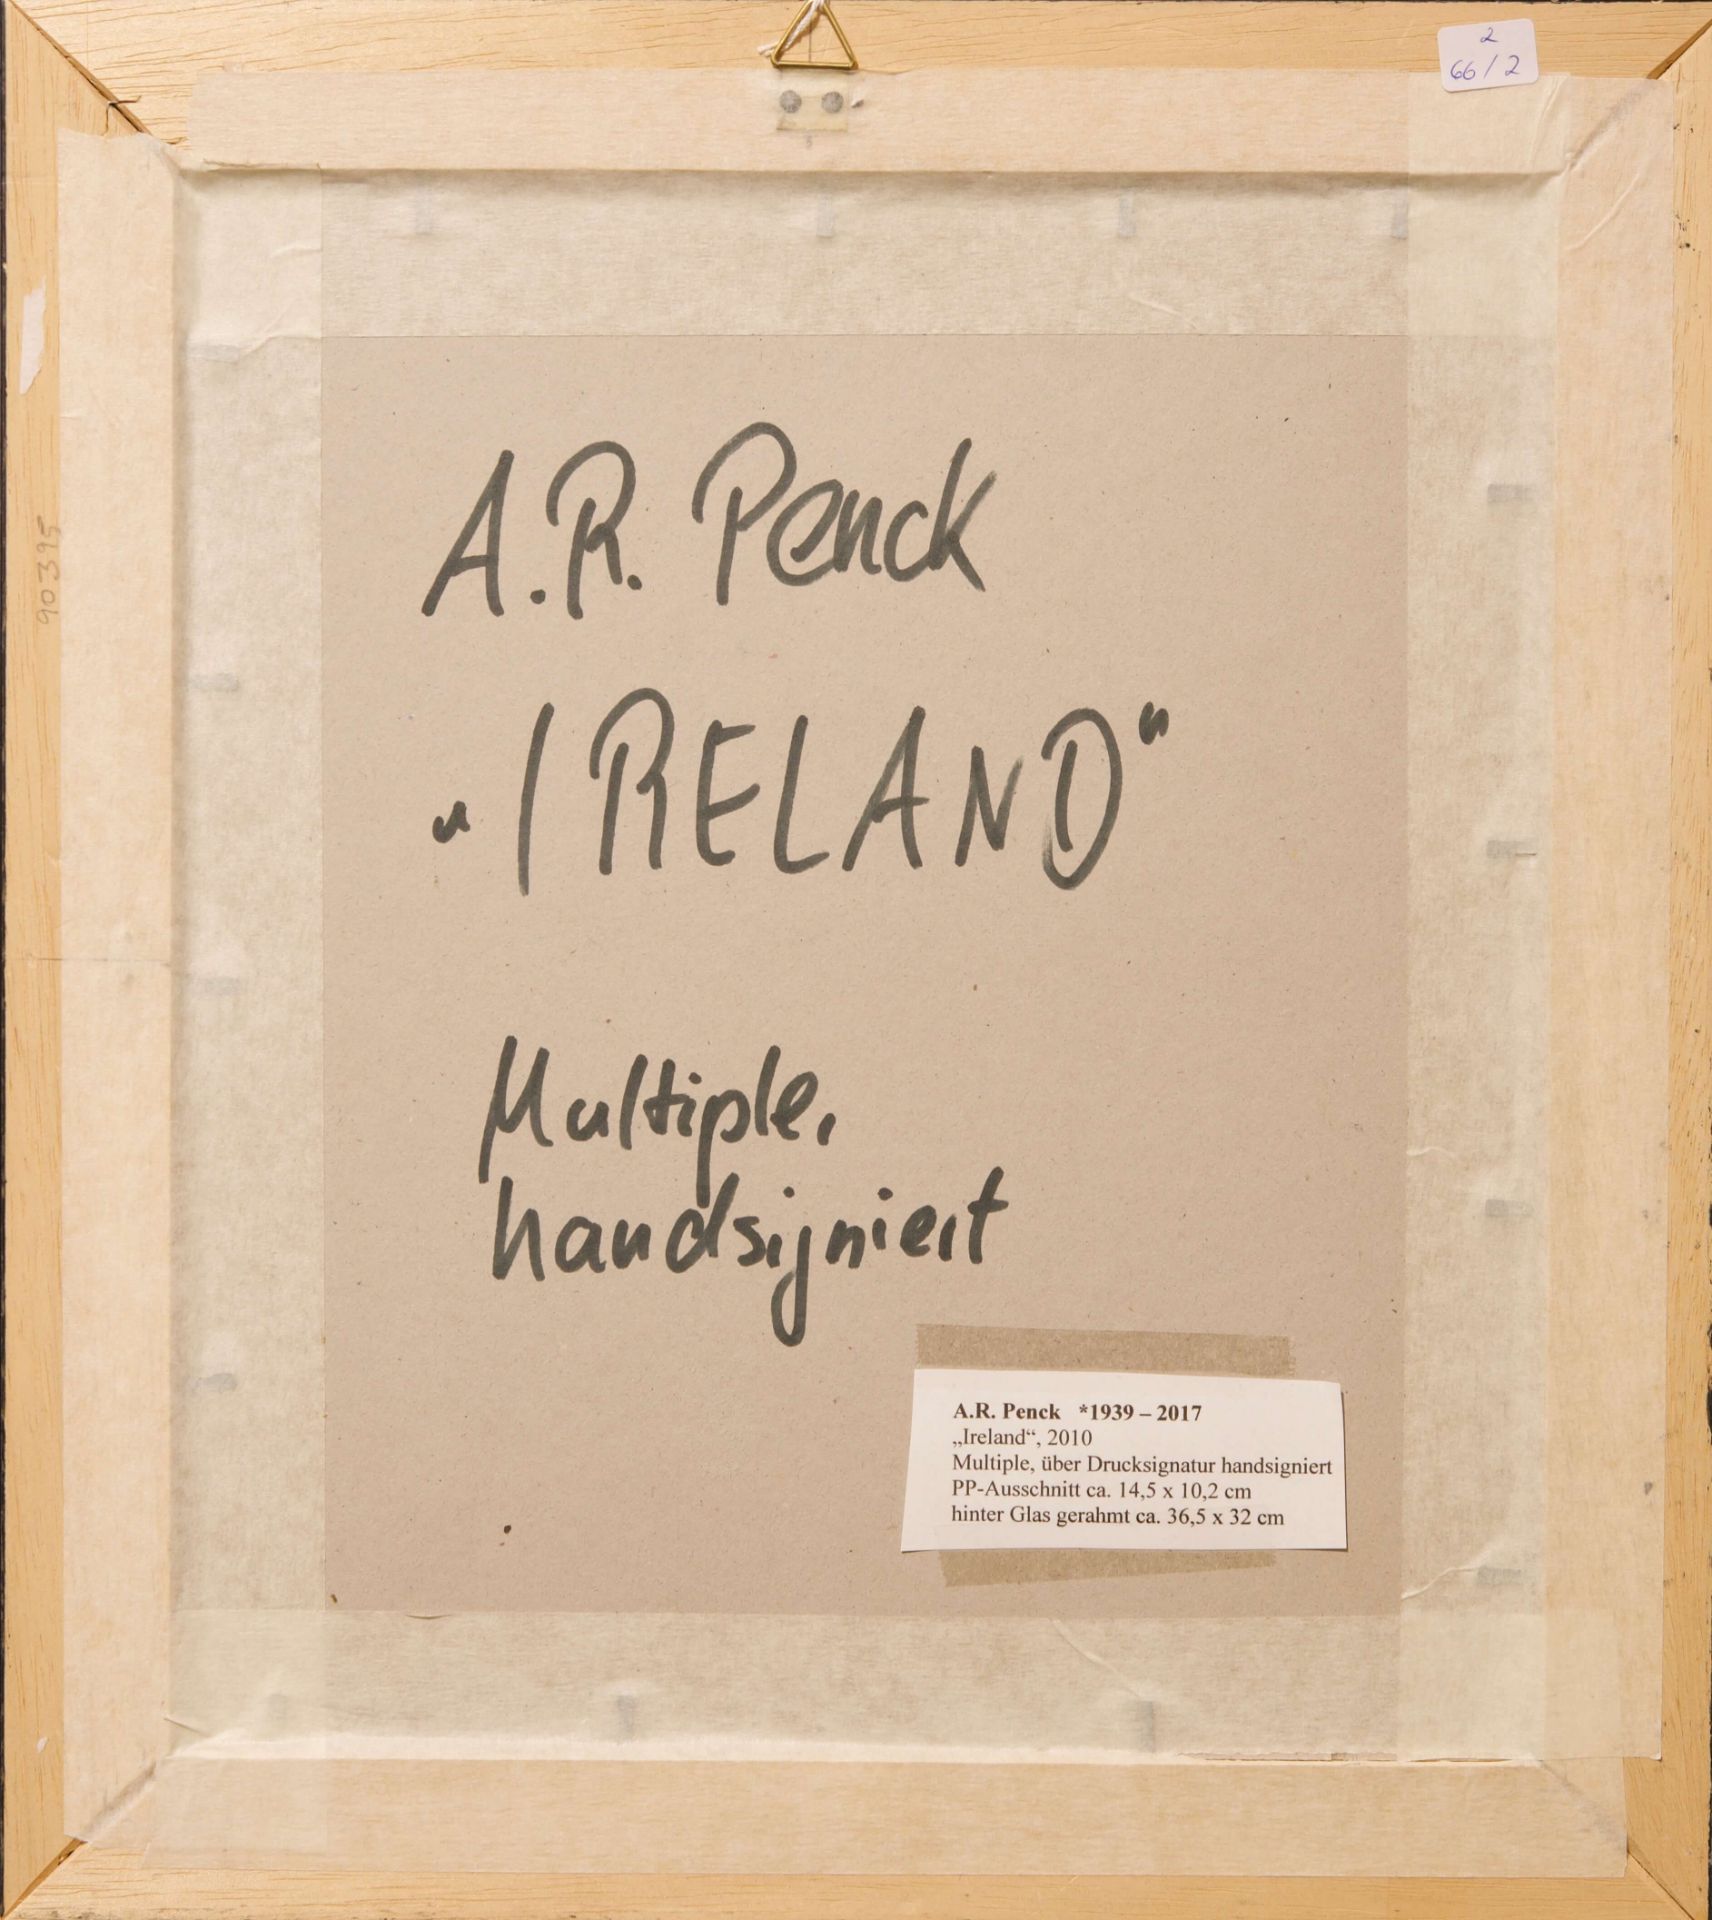 A.R.Penck 1939-2017, Irland, 2010 |A.R.Penck 1939-2017, Ireland, 2010 - Image 5 of 5